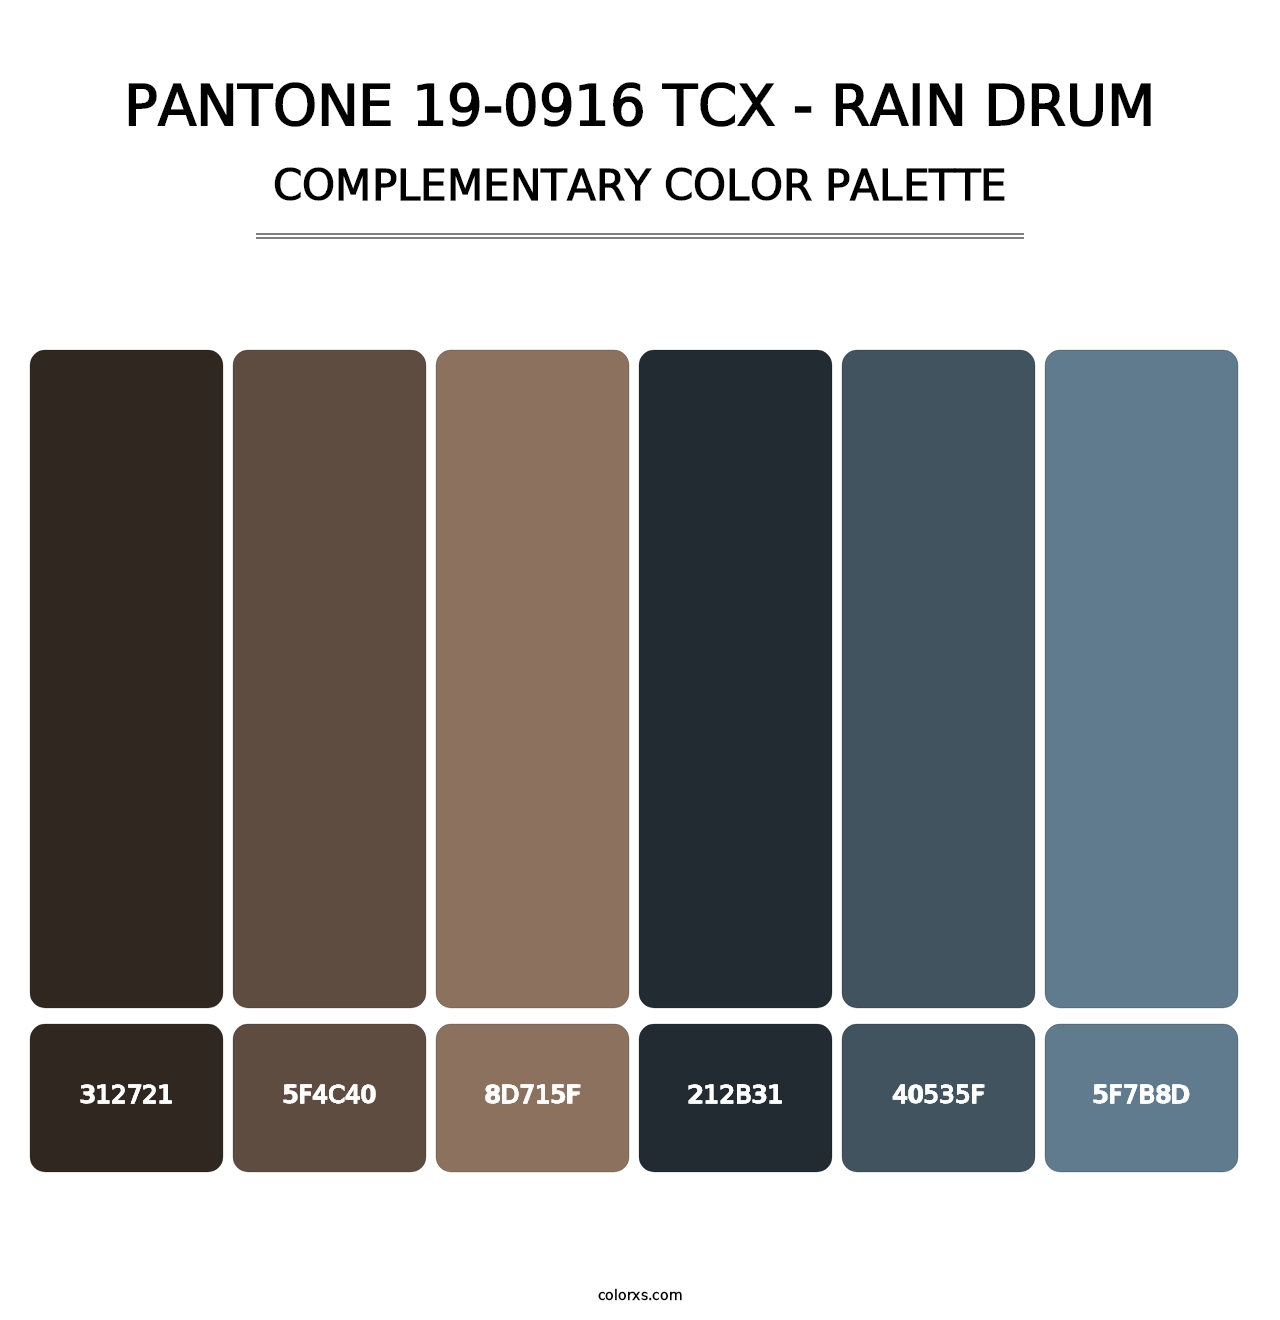 PANTONE 19-0916 TCX - Rain Drum - Complementary Color Palette